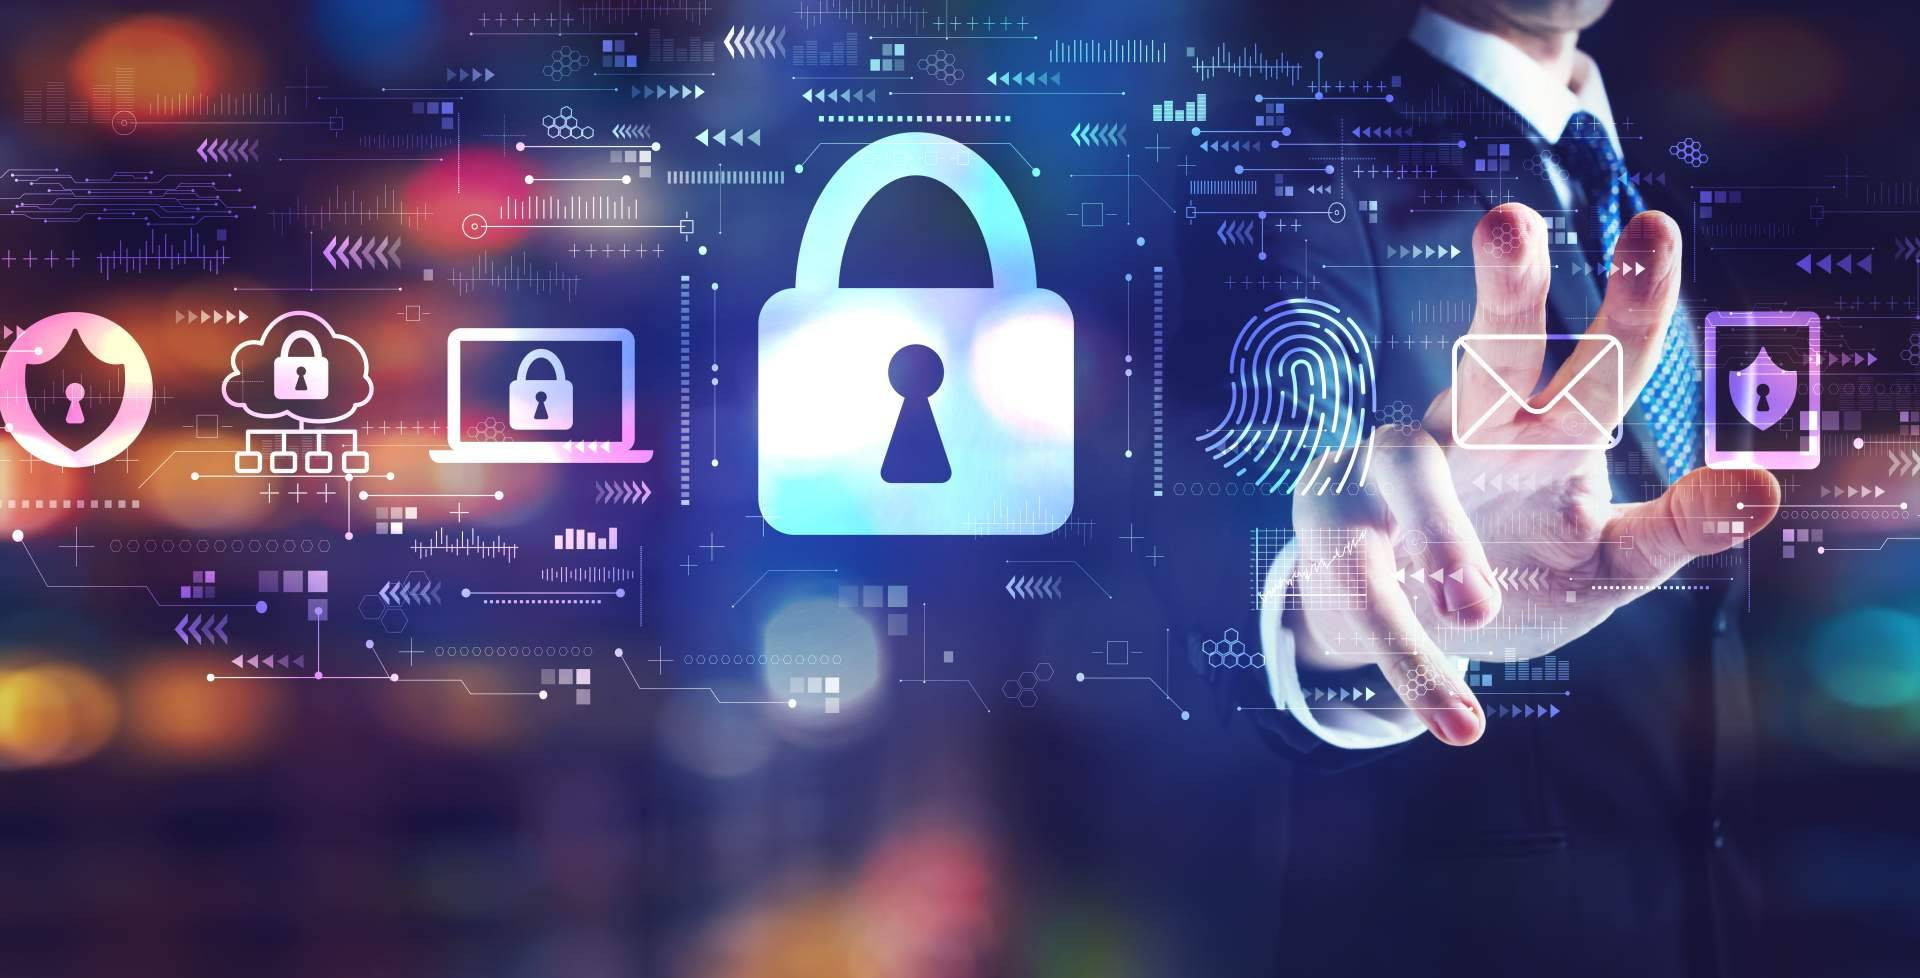  Los nuevos cursos de Ciberseguridad, hacking e IA que llegan con Hack by Security 